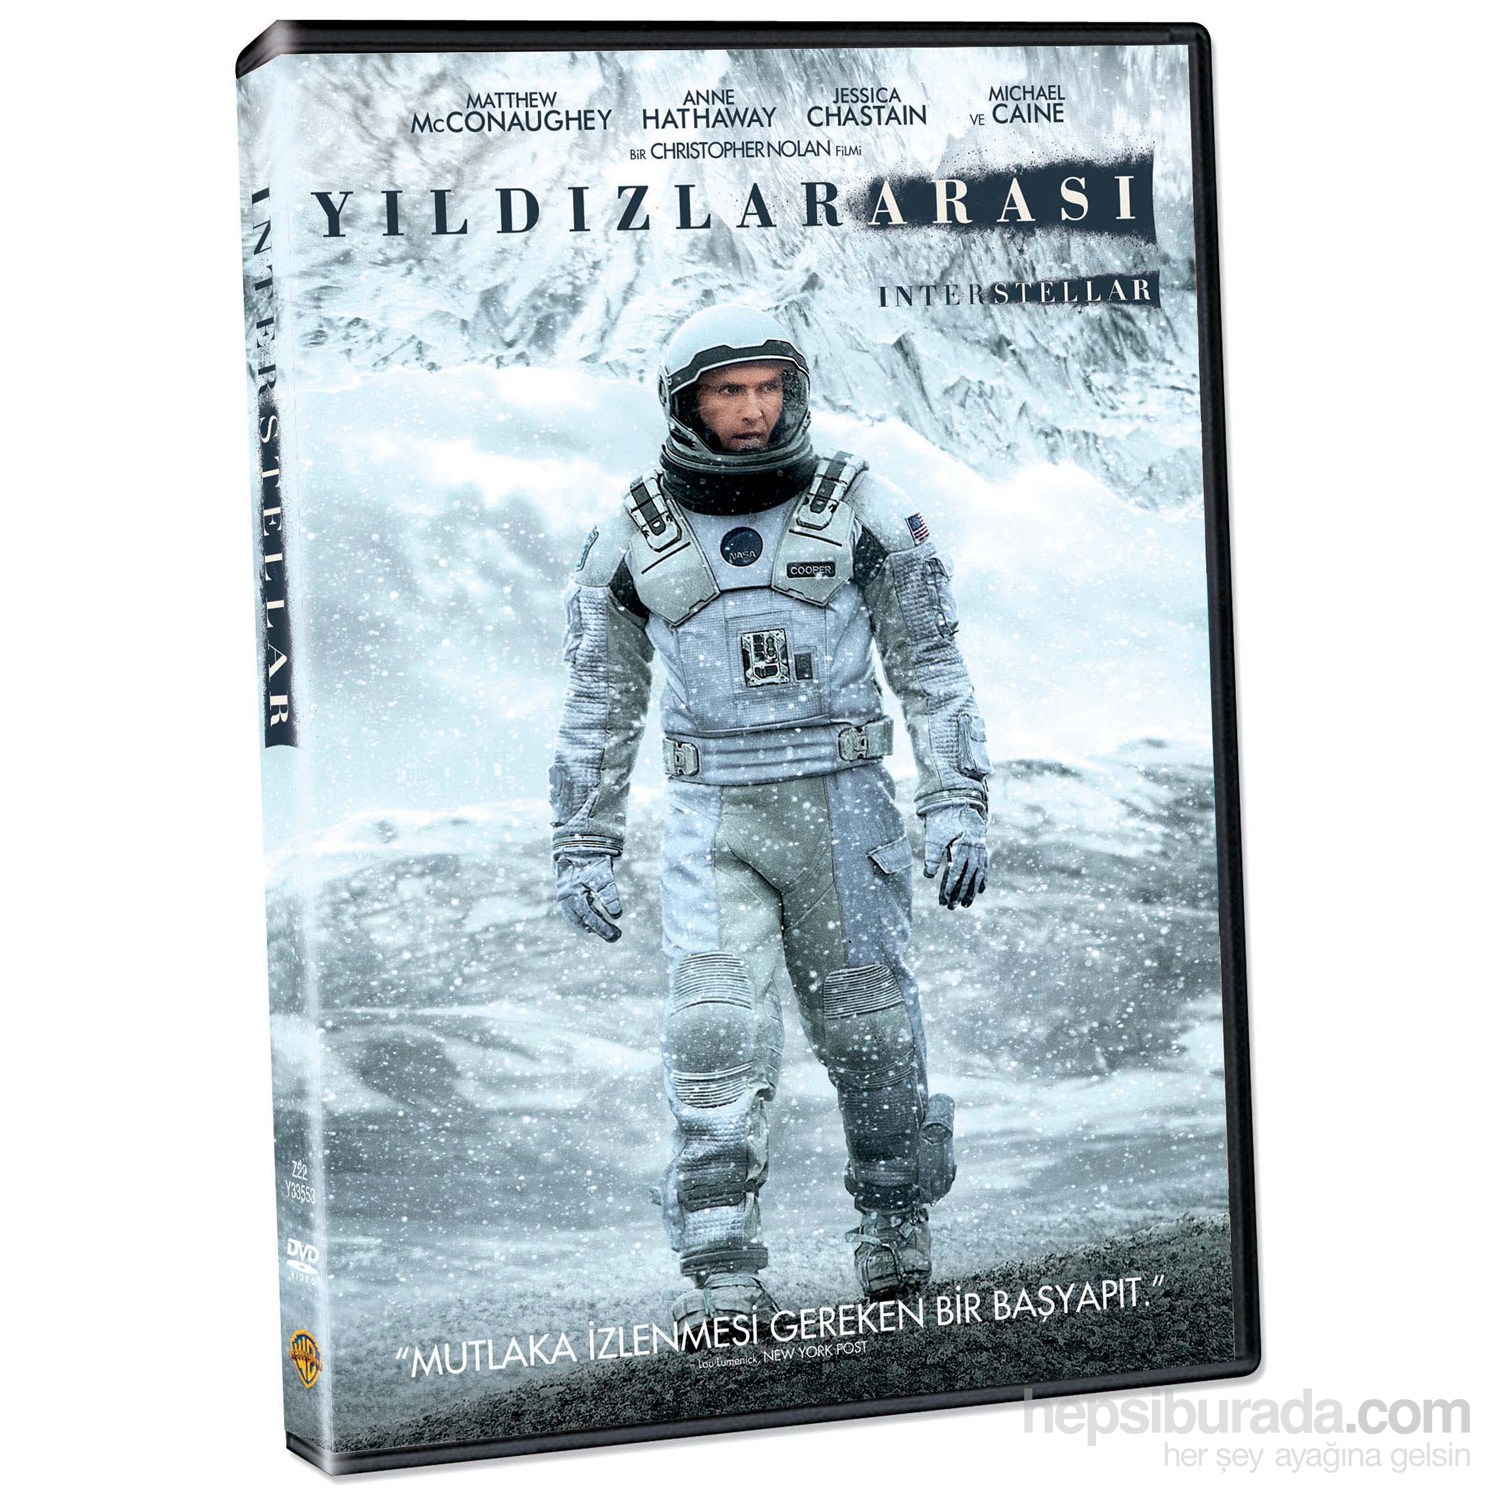 Interstellar (Yıldızlararası) (DVD)